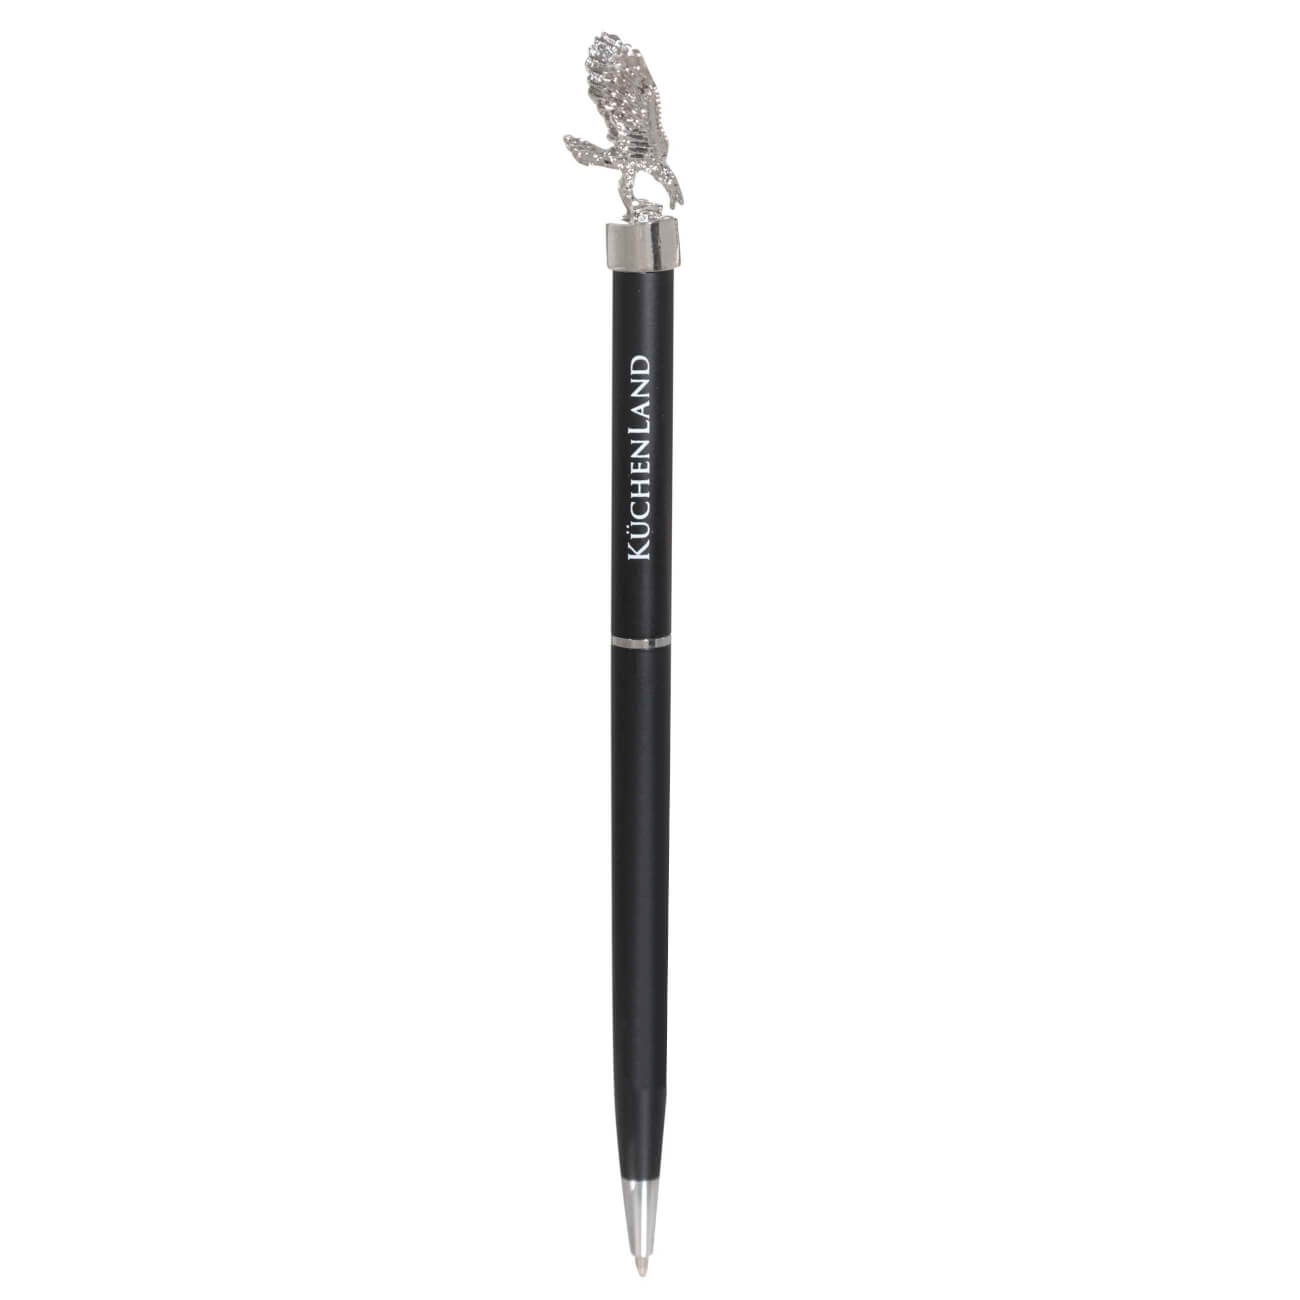 Ручка шариковая, 15 см, с фигуркой, сталь, черная, Орел, Draw figure ручка шариковая 15 см с фигуркой сталь черно серебристая телец zodiac